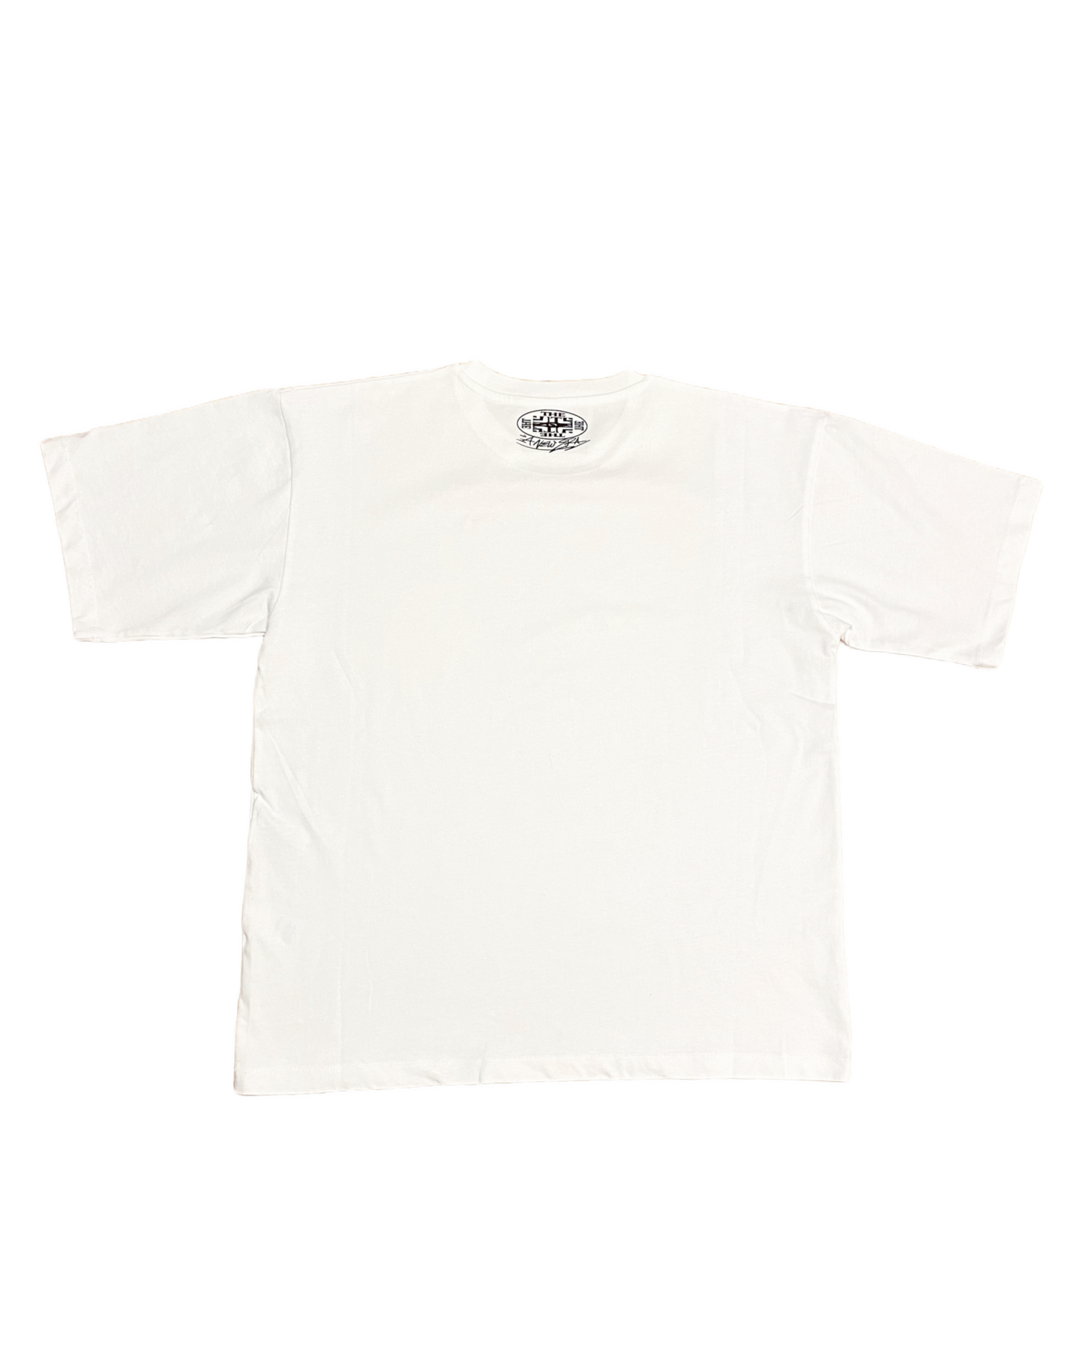 White A NEW ERA Shirt